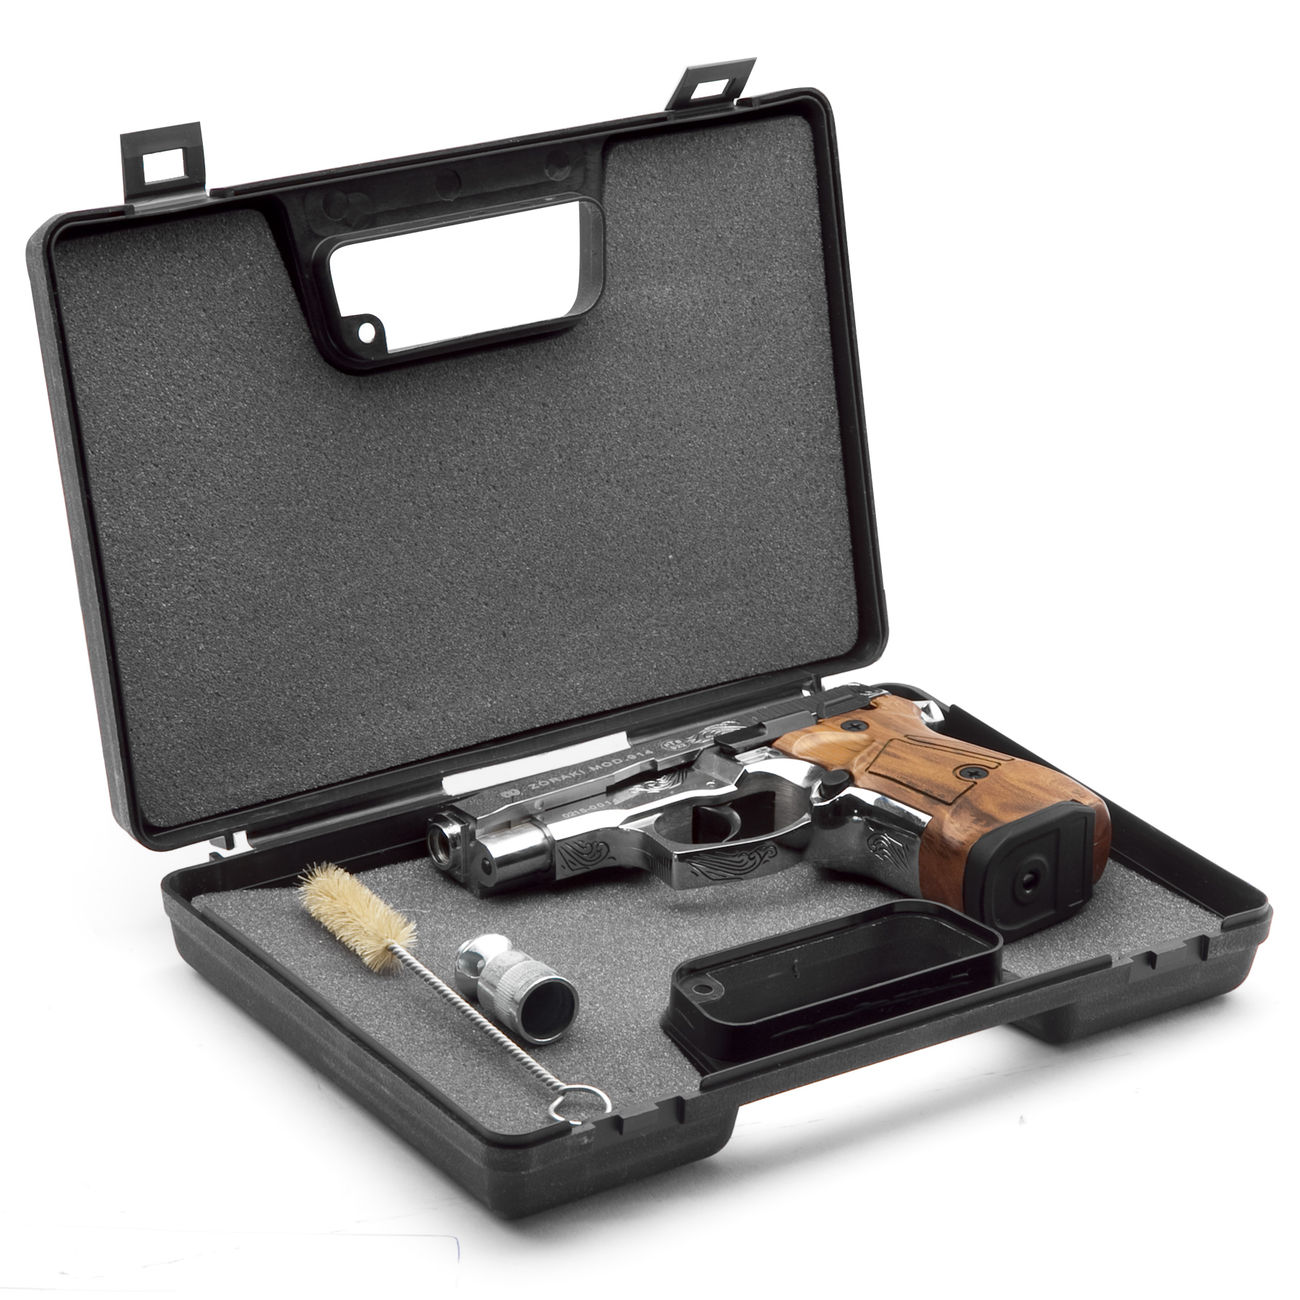 Zoraki 914 Schreckschuss Pistole 9mm P.A.K. chrom graviert mit Kunststoffgriff Bild 1